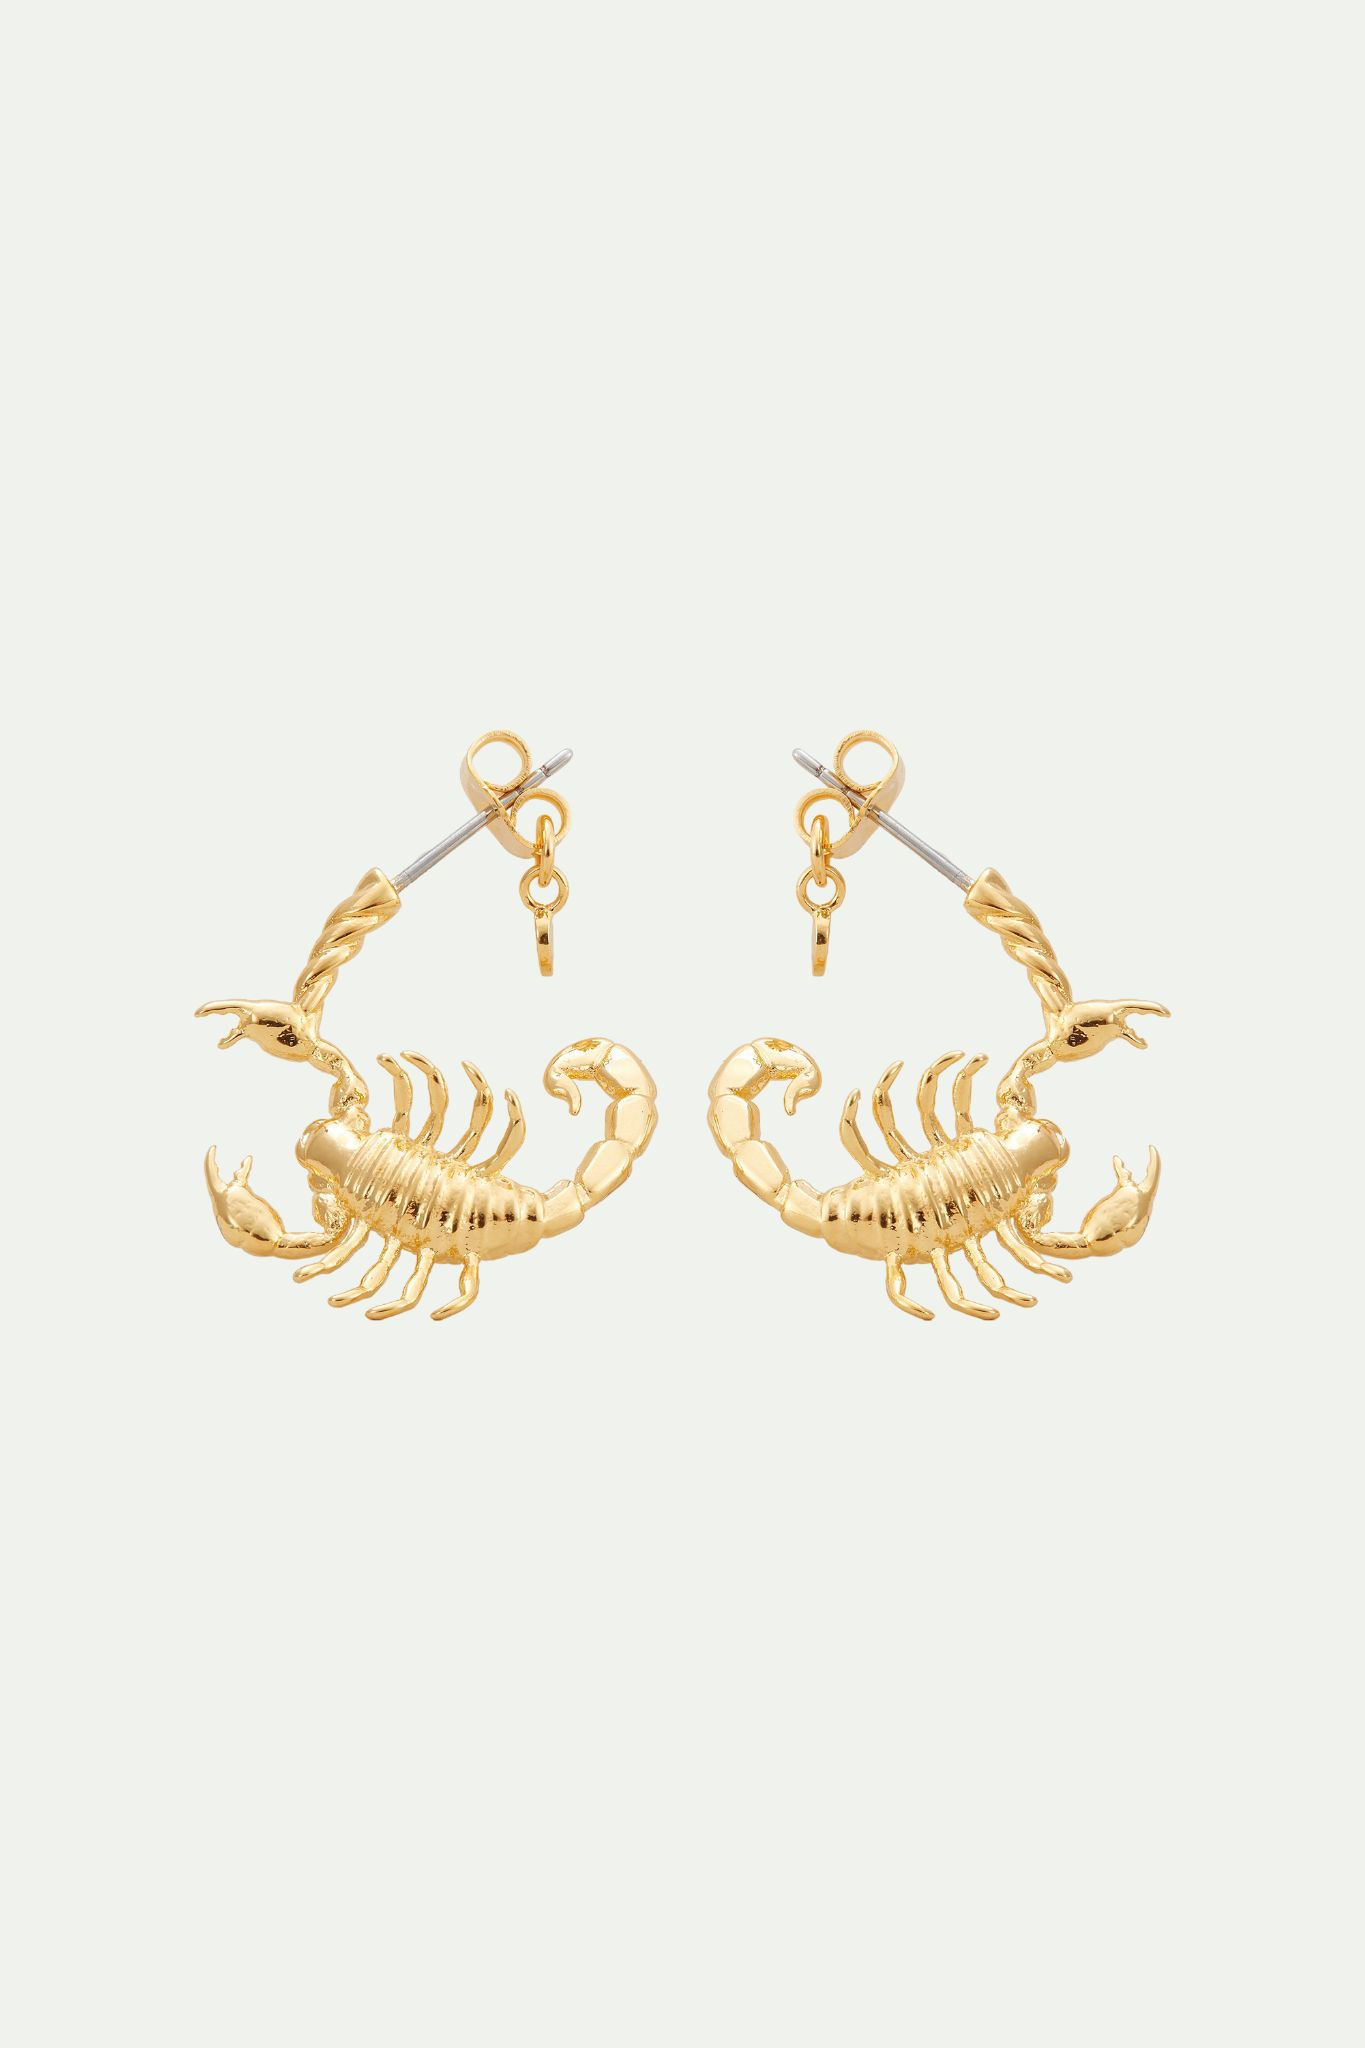 Boucles d'oreilles créoles signe astrologique scorpion